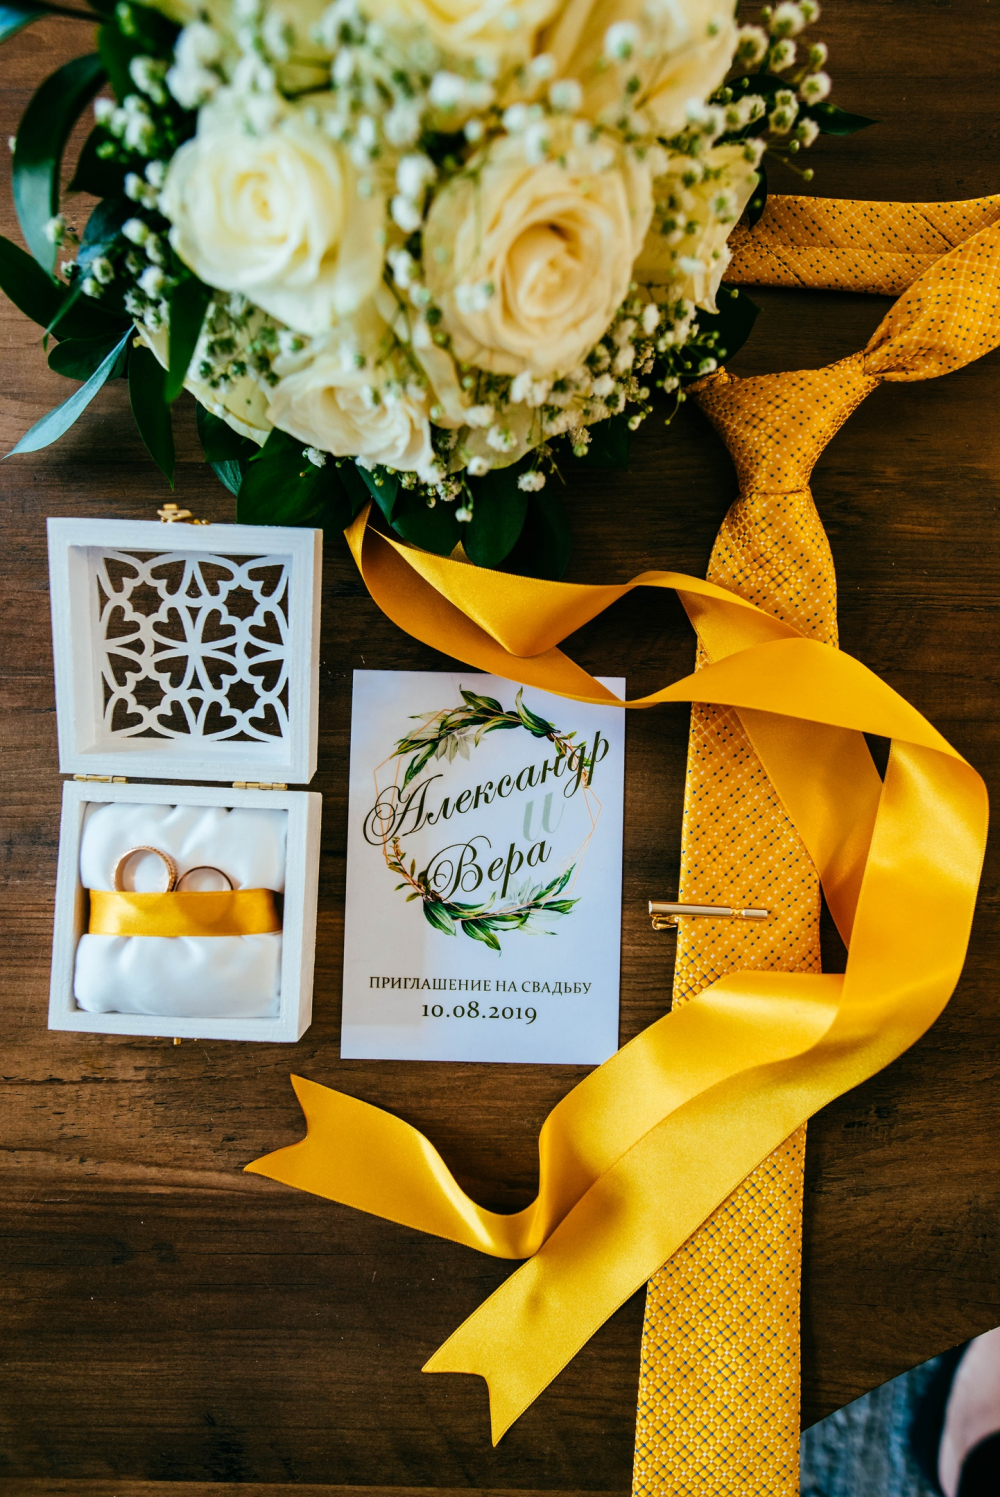 Атрибутика торжества сочитающаяся с деталями образа жениха и невесты. Комплект был создан специально для желто-зеленой свадьбы.